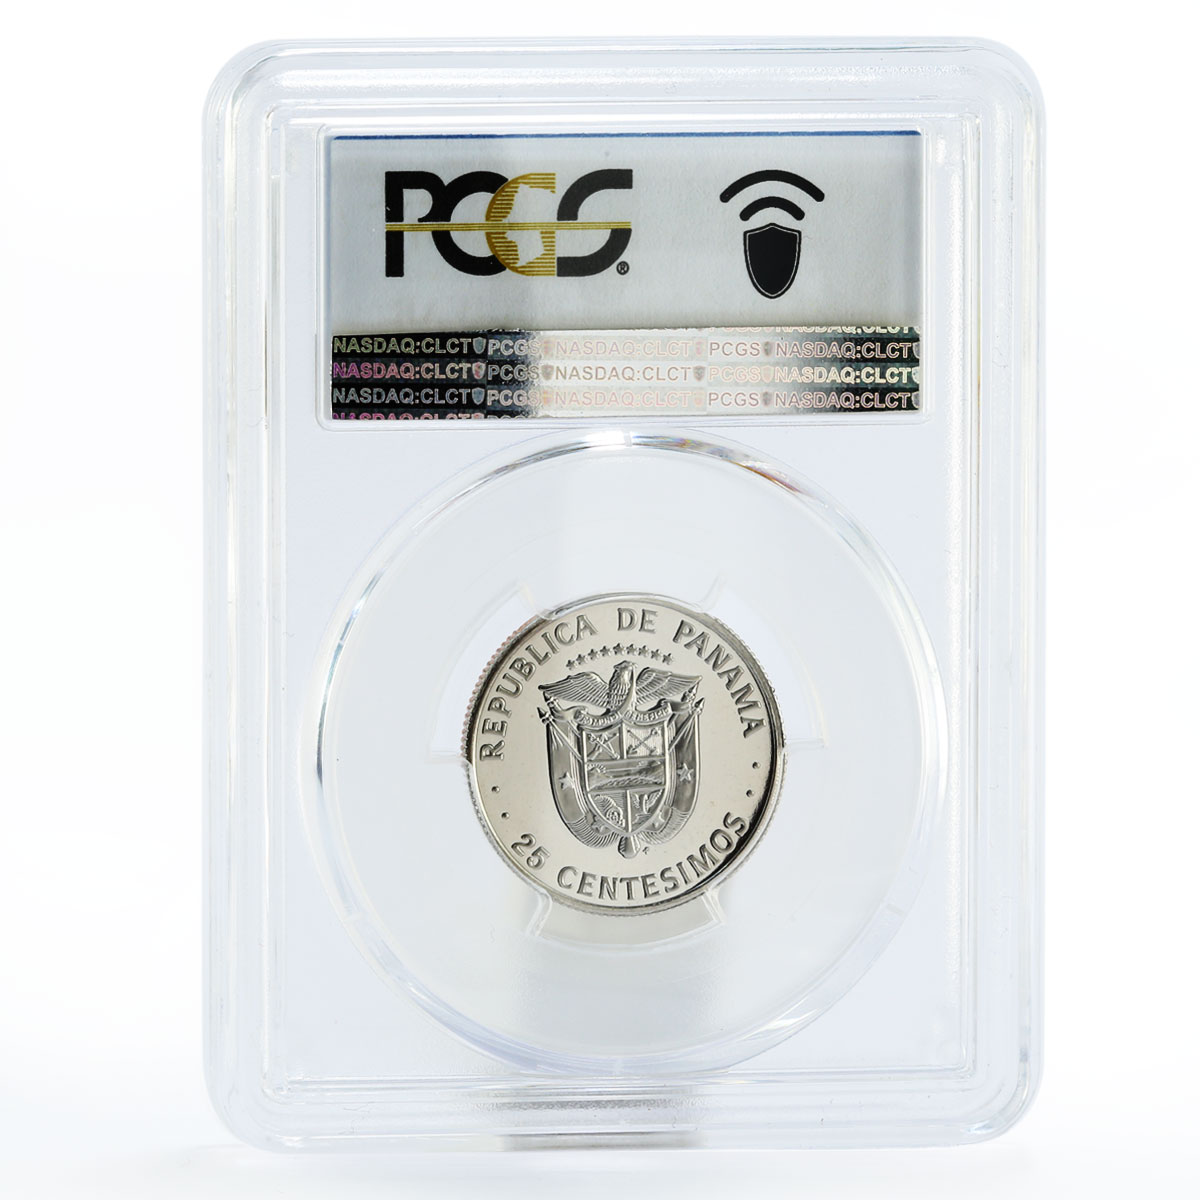 Panama 25 centesimos Statesman Justo Arosemena PR70 PCGS proof nickel coin 1980